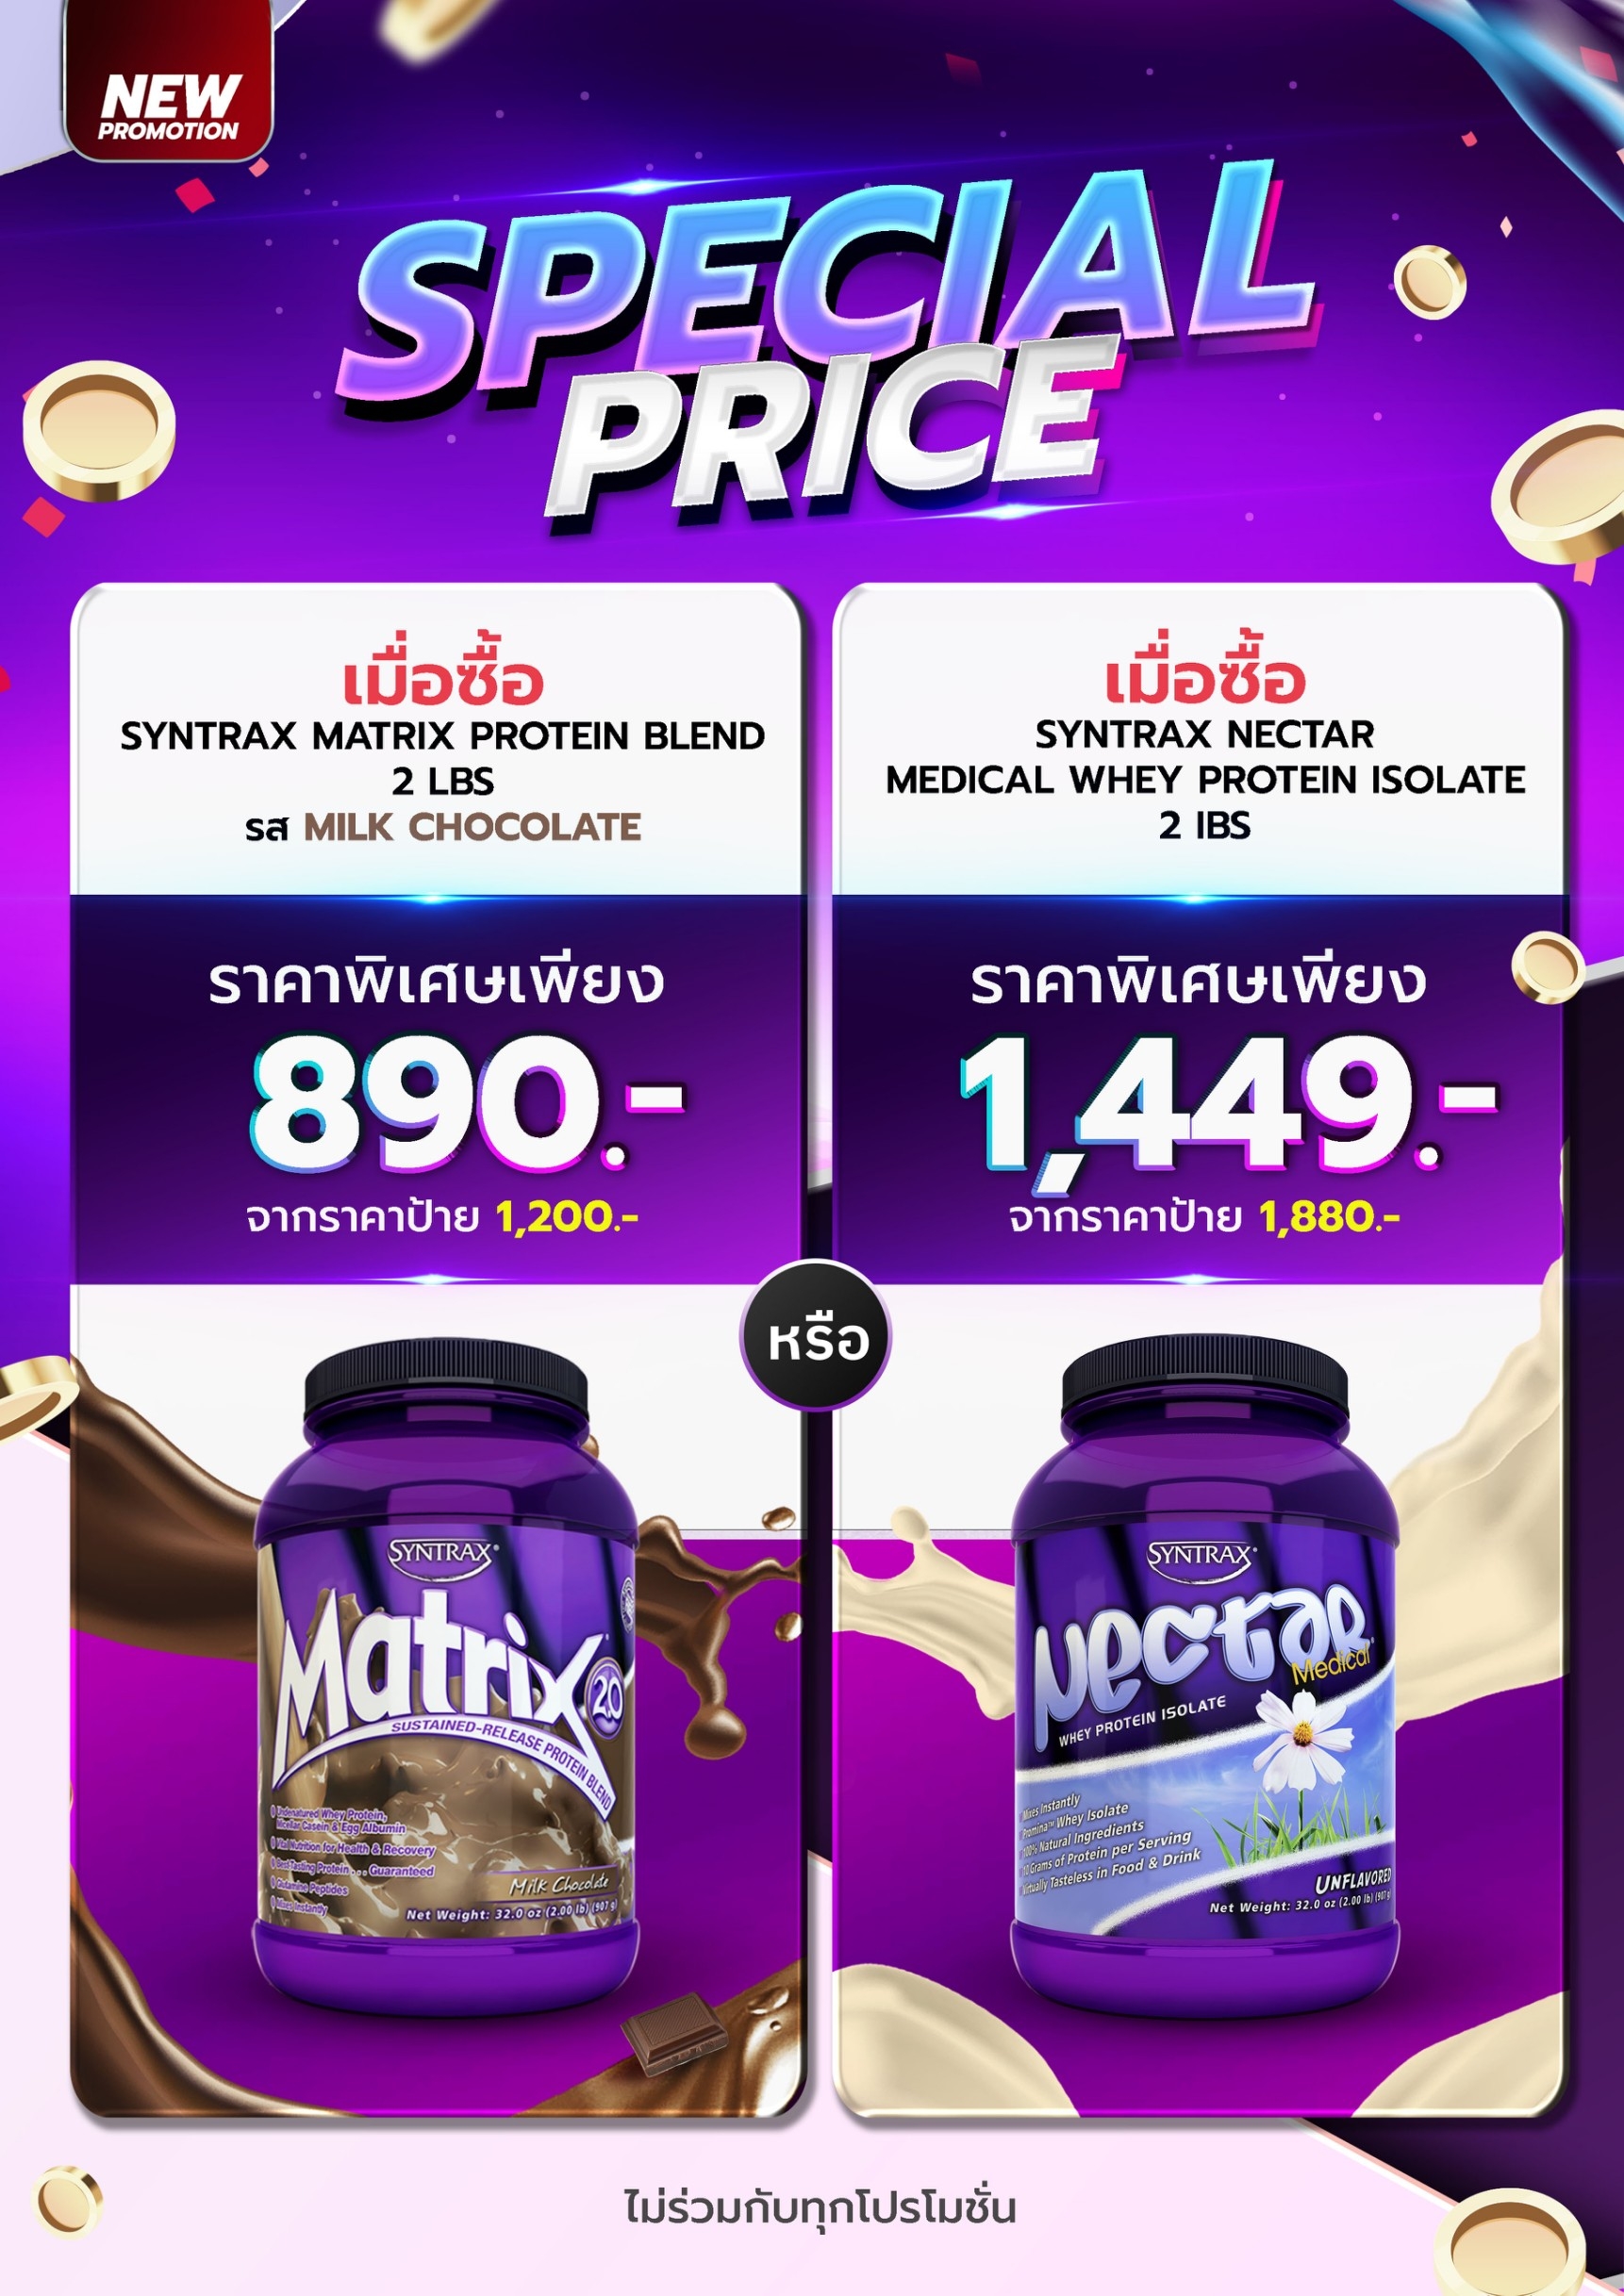 Special Price เมื่อซื้อ Syntrax Matrix 2lbs รส Milk Chocolate ราคาพิเศษ!! 890 บาท หรือ เมื่อซื้อ Syntrax Nectar Medical 2lbs ราคาพิเศษ!! 1,449 บาท *ไม่ร่วมกับทุกโปรโมชั่น*